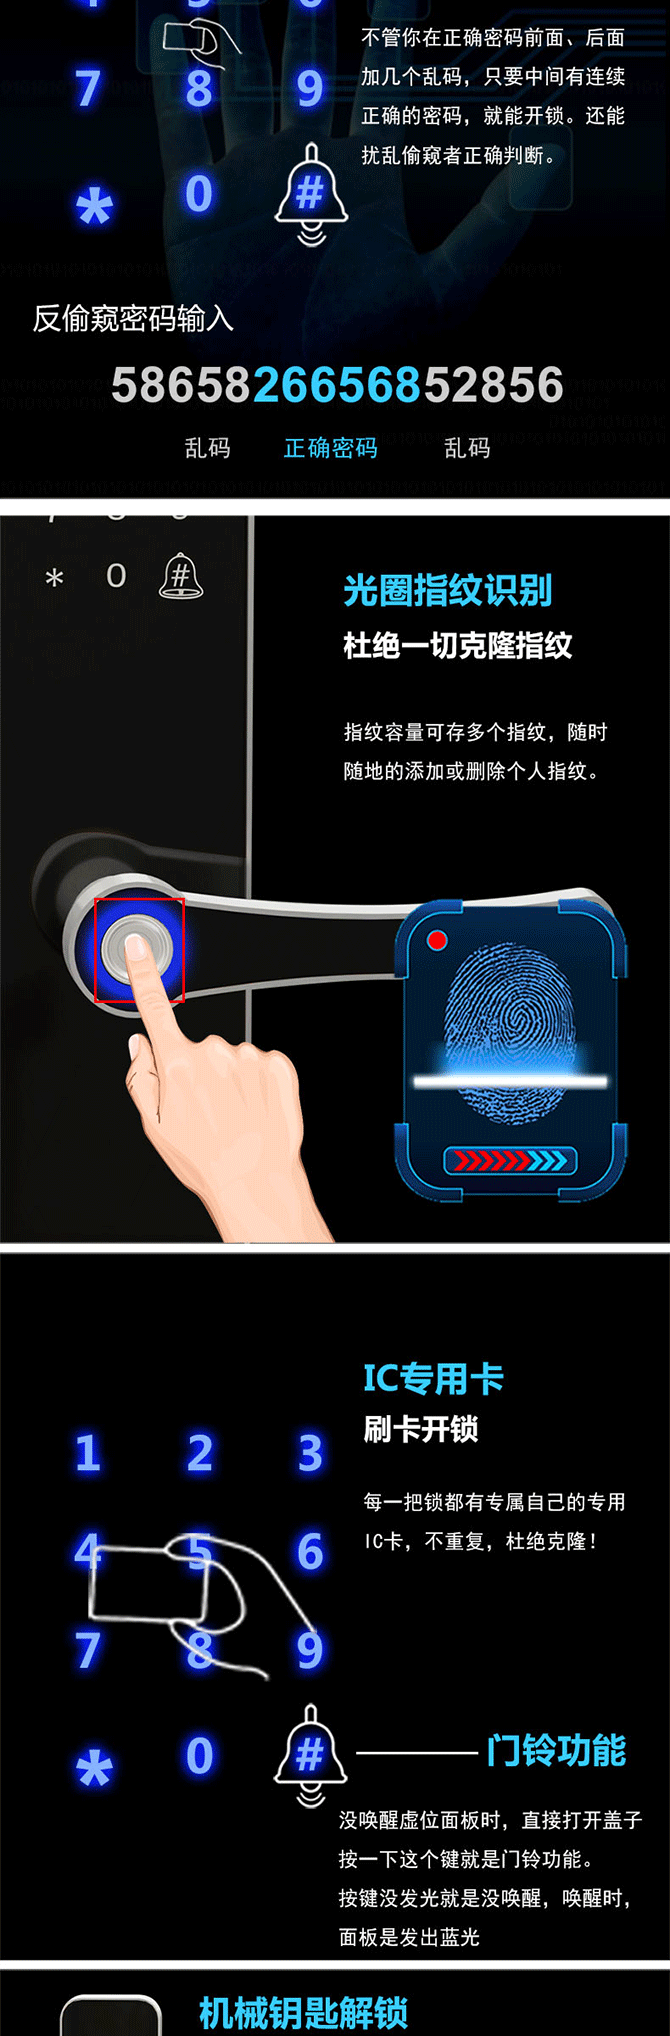 卓居智能锁 JR-311智能门锁